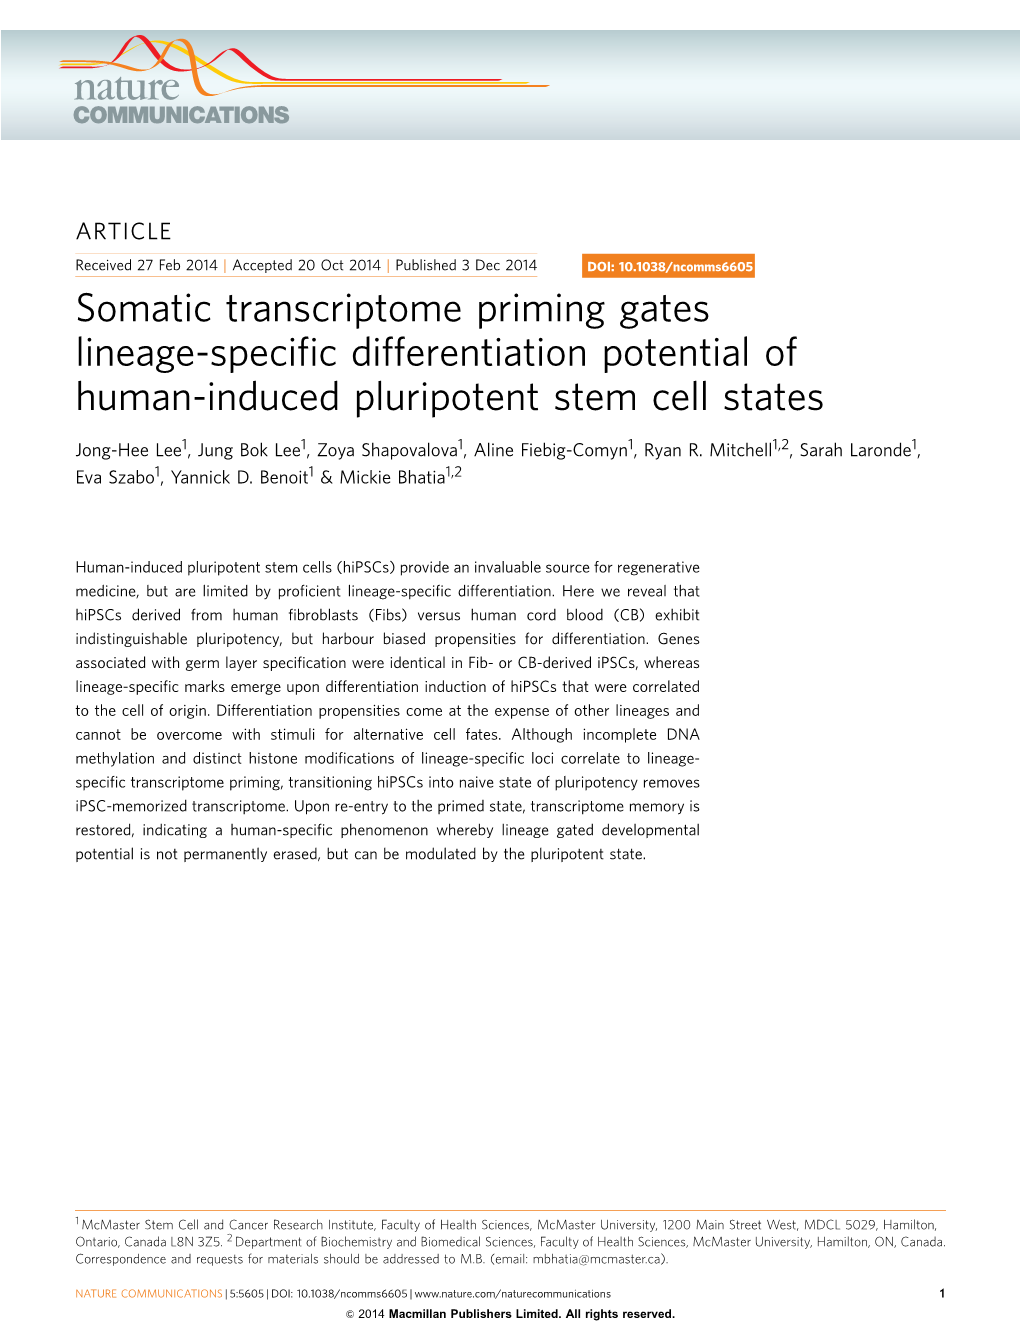 Somatic Transcriptome Priming Gates Lineage-Specific Differentiation